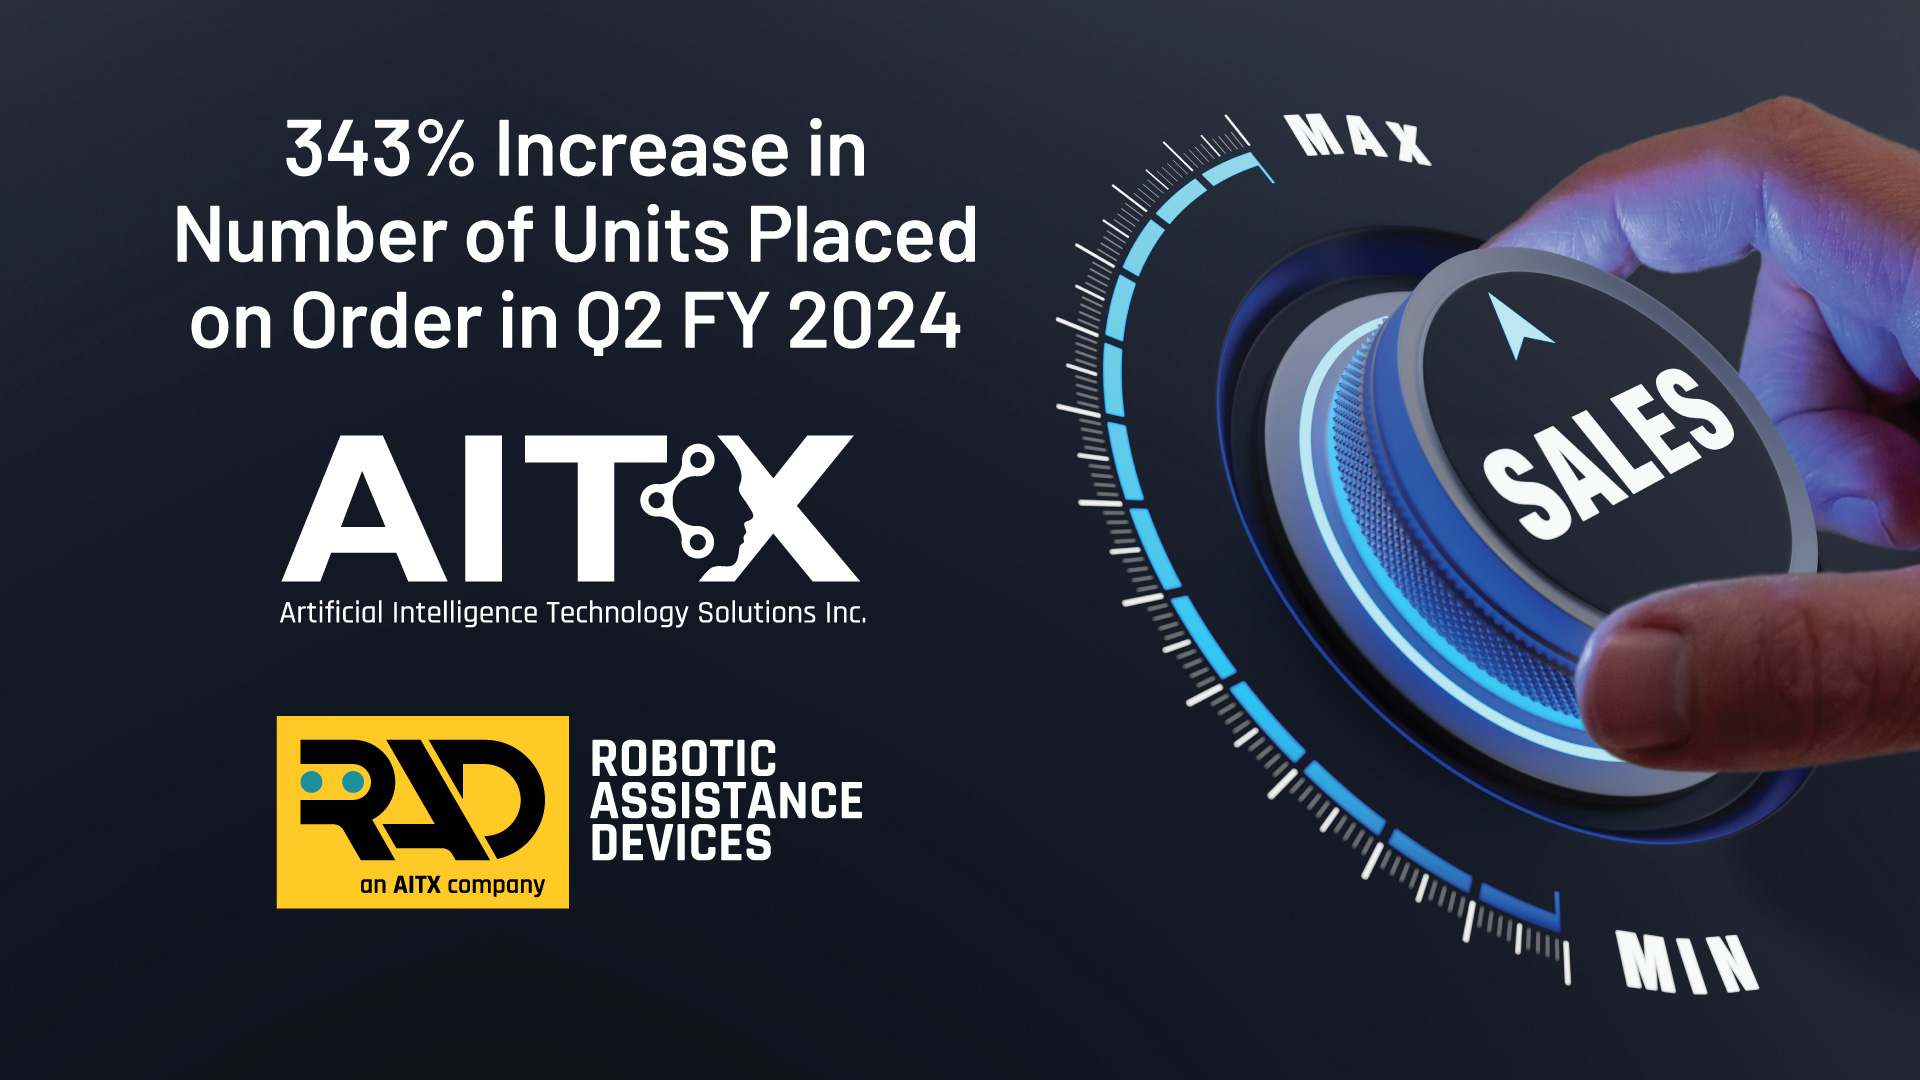 AITX-RAD-Record-Unit-Intake-230906-1920x1080